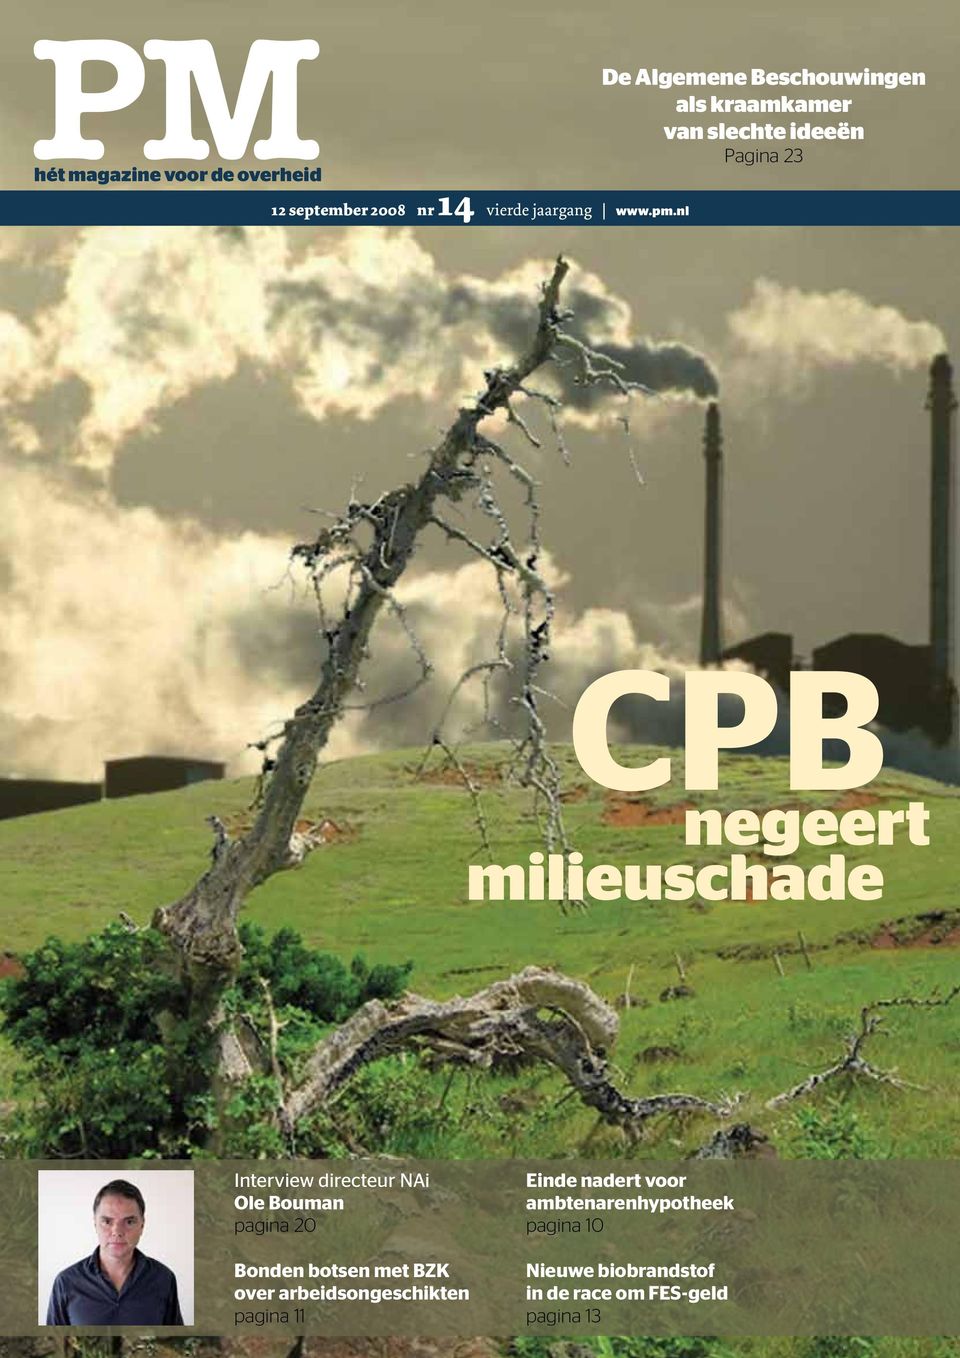 nl CPB negeert milieuschade Interview directeur NAi Ole Bouman pagina 20 Bonden botsen met BZK